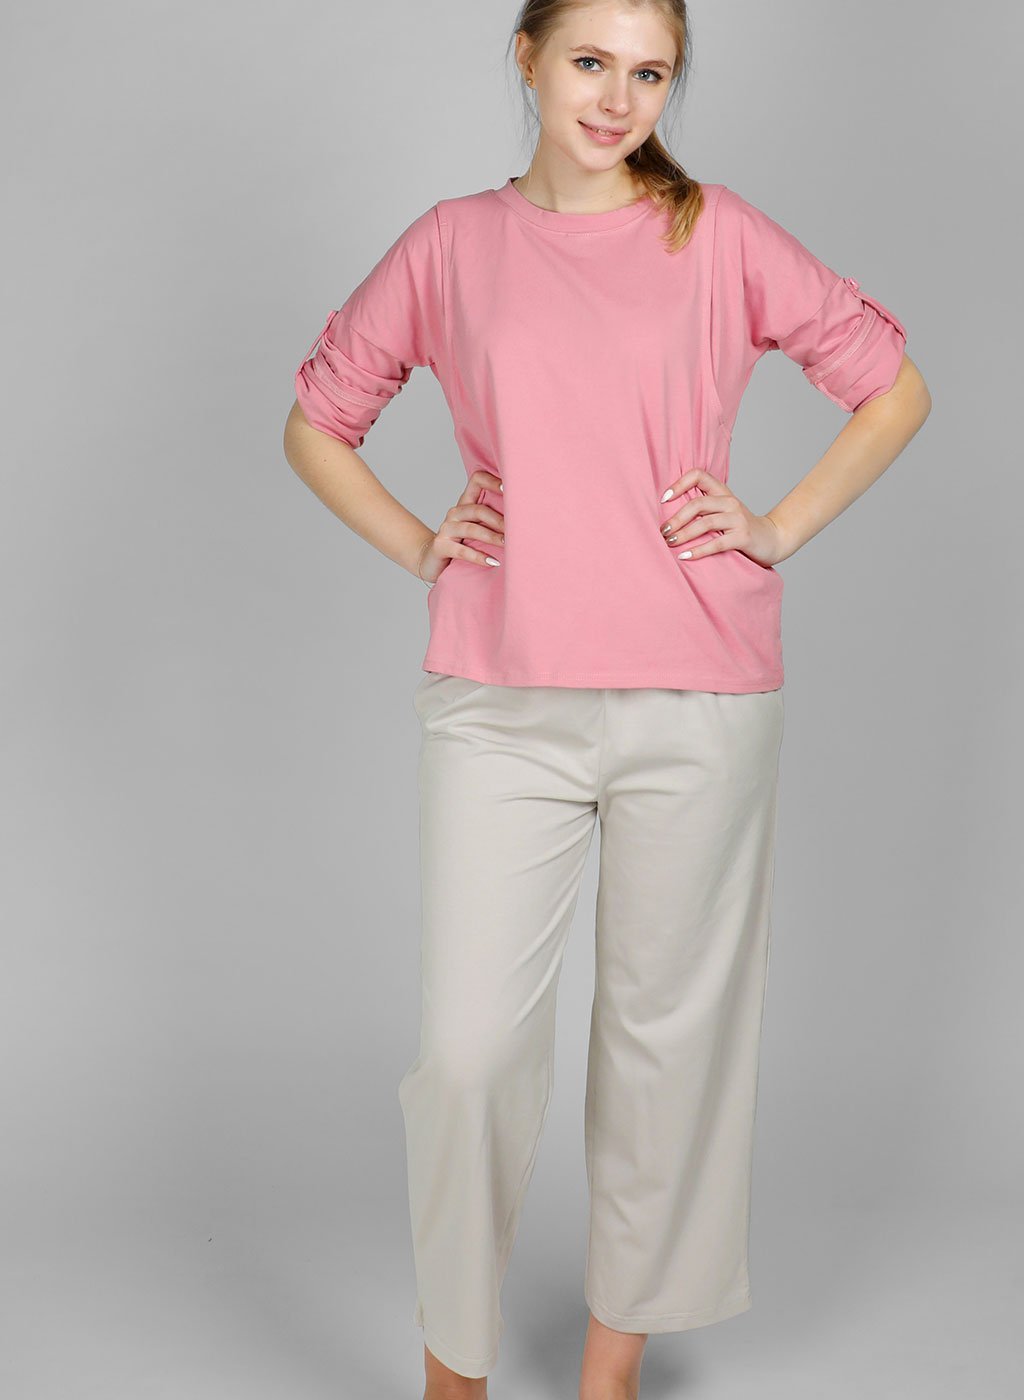 Lovemère Sleepwear M Rosy Pink Maternity & Nursing Pajamas